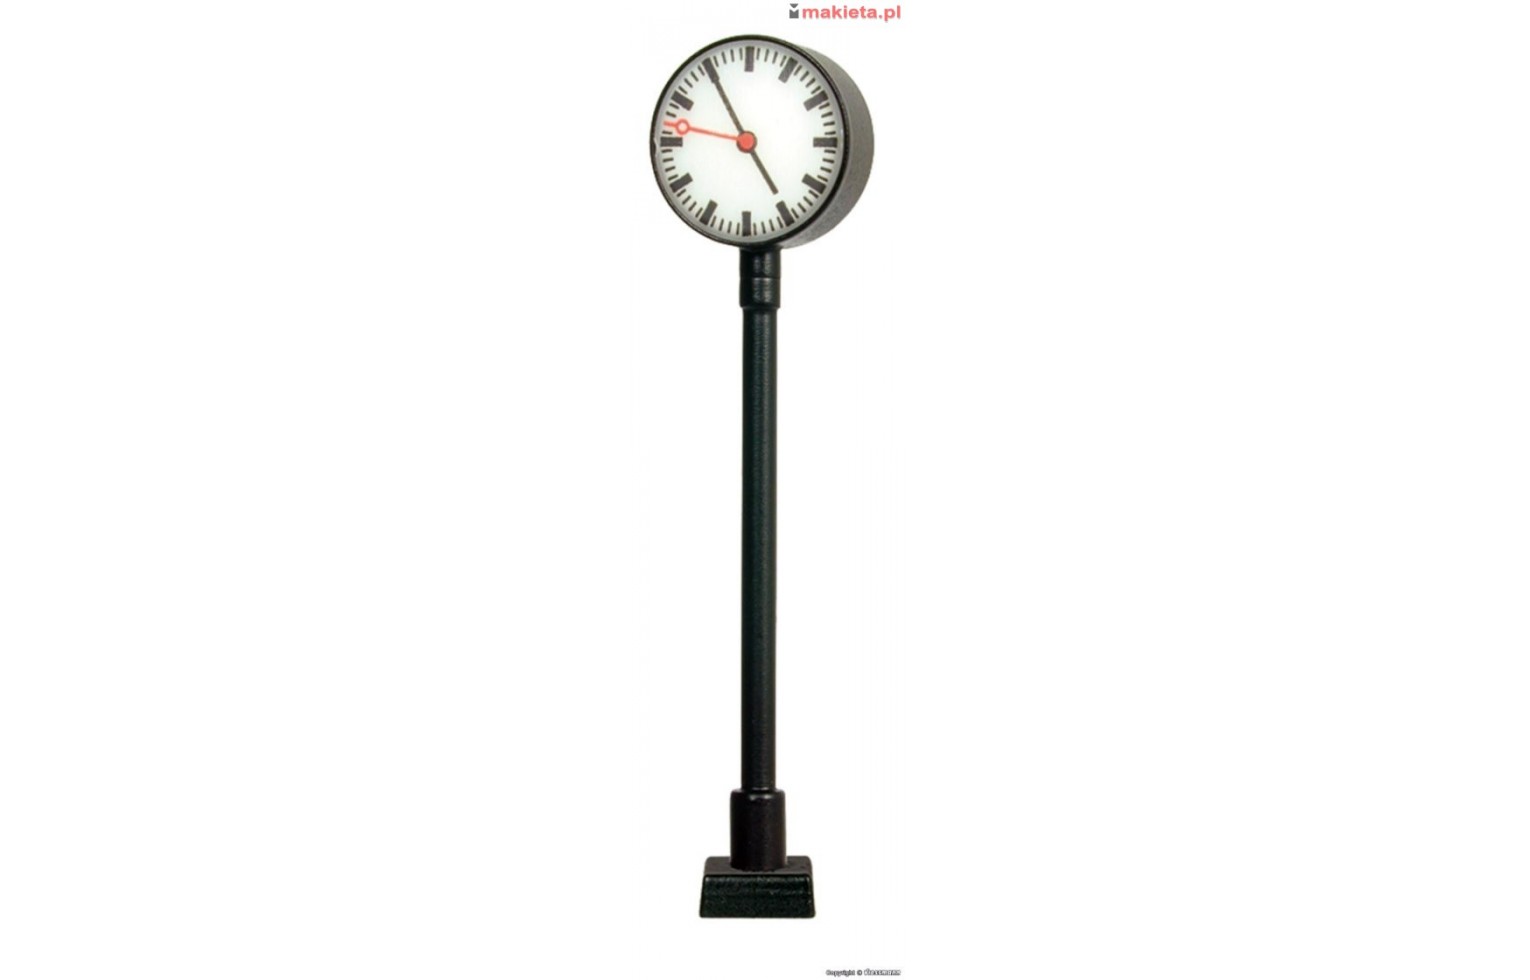 Viessmann 50801, Zegar na słupie (atrapa), skala H0